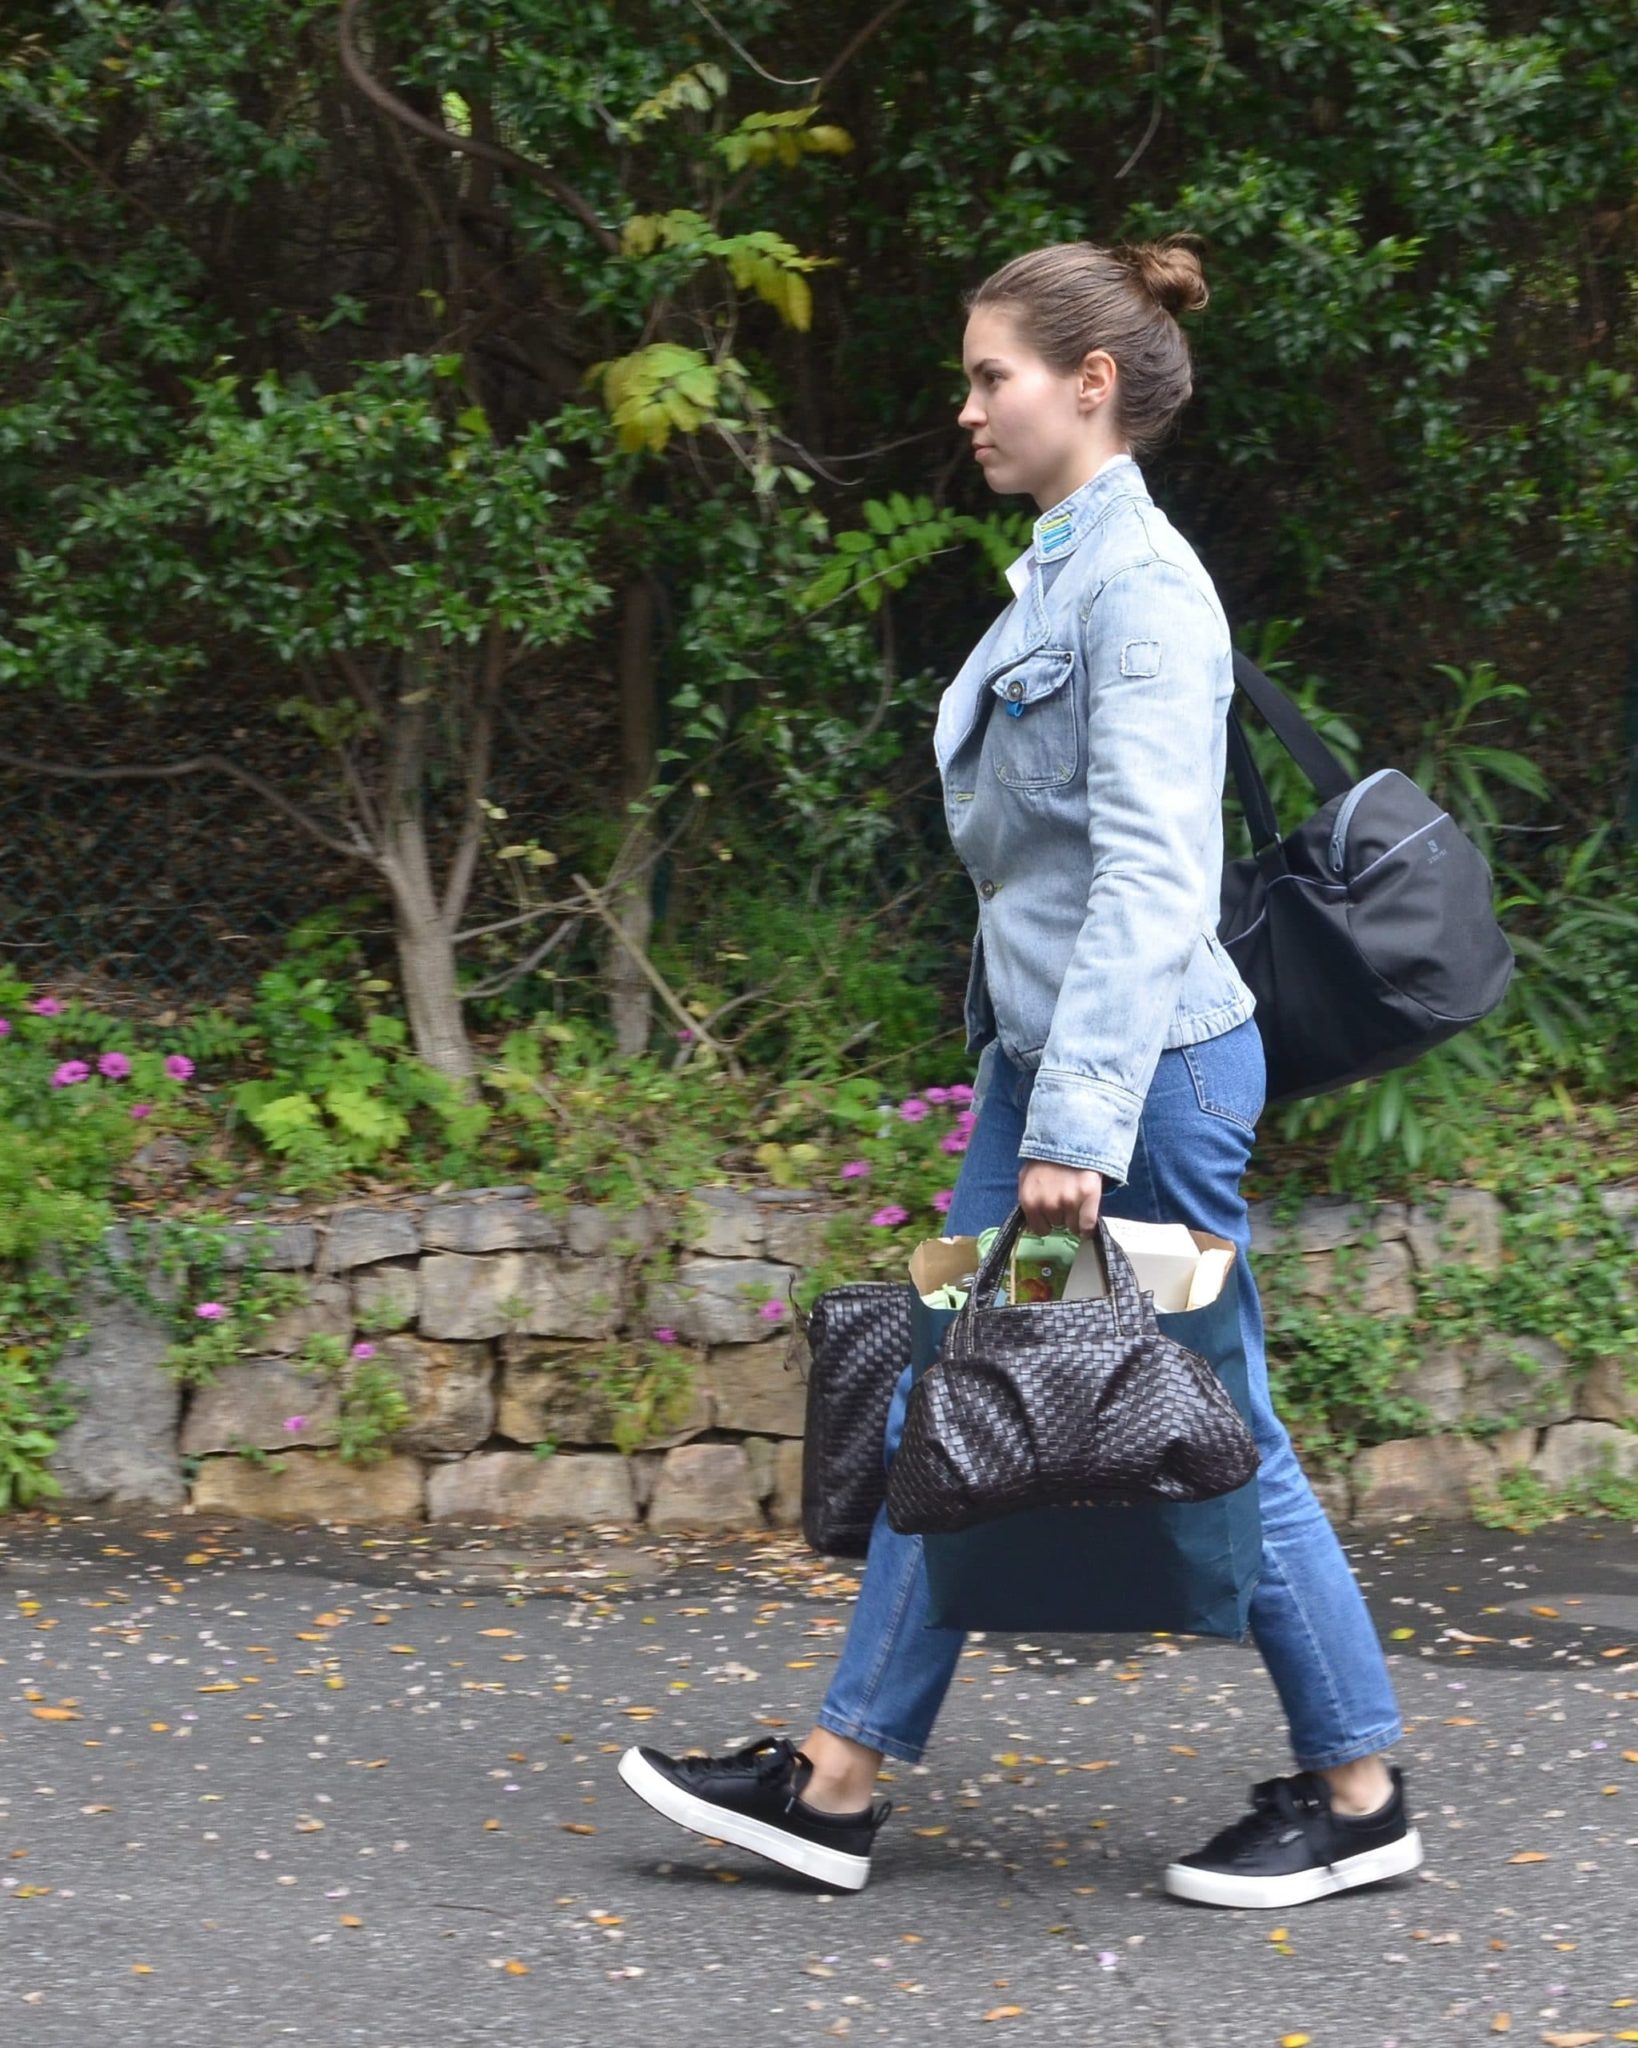 Femme portant son cartable, son sac de sport, un sac poubelle, son sac à main qui marche activement sur un chemin